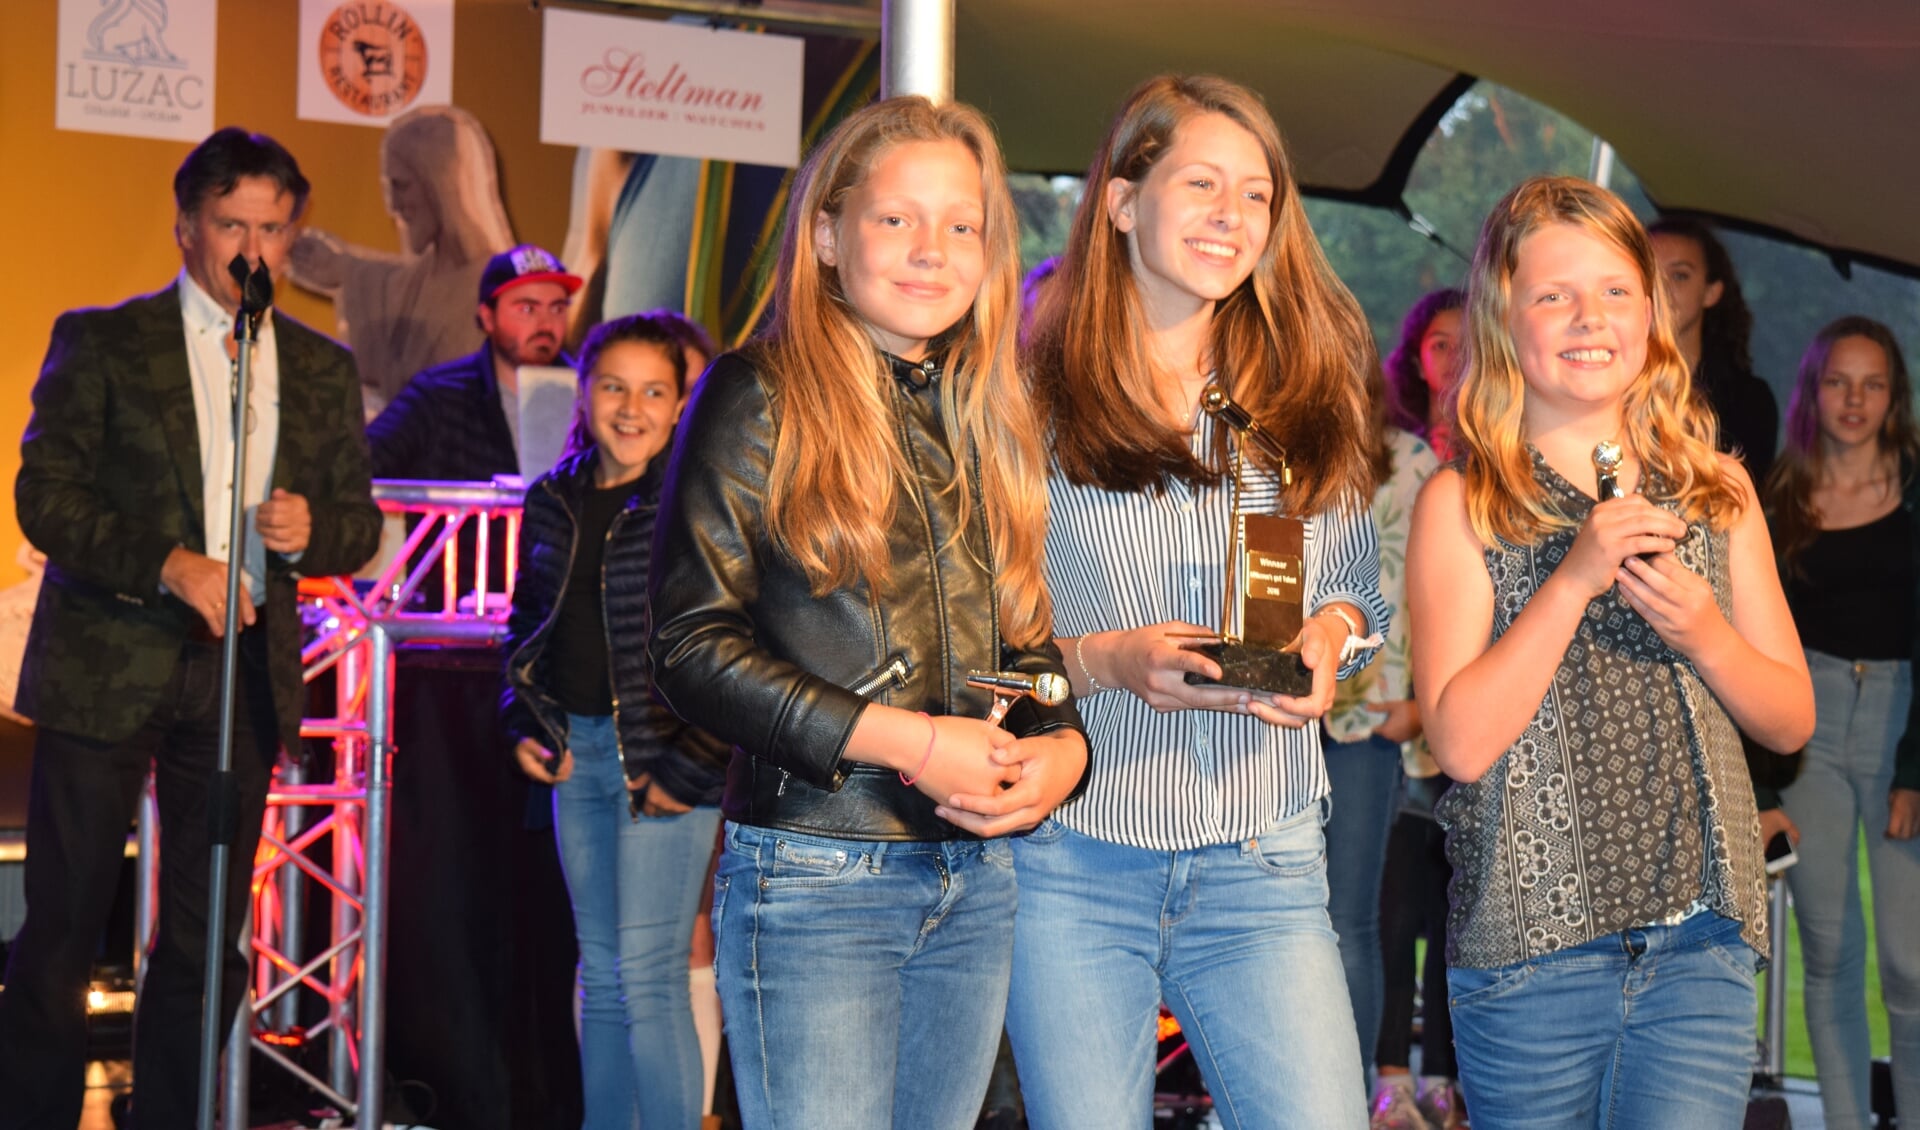 De winnaars van Bilthoven's Got Talent. V.l.n.r. Isis Mendel (2e), Ilse van Rijswijk (1e) en Isis Nijboer (3e).